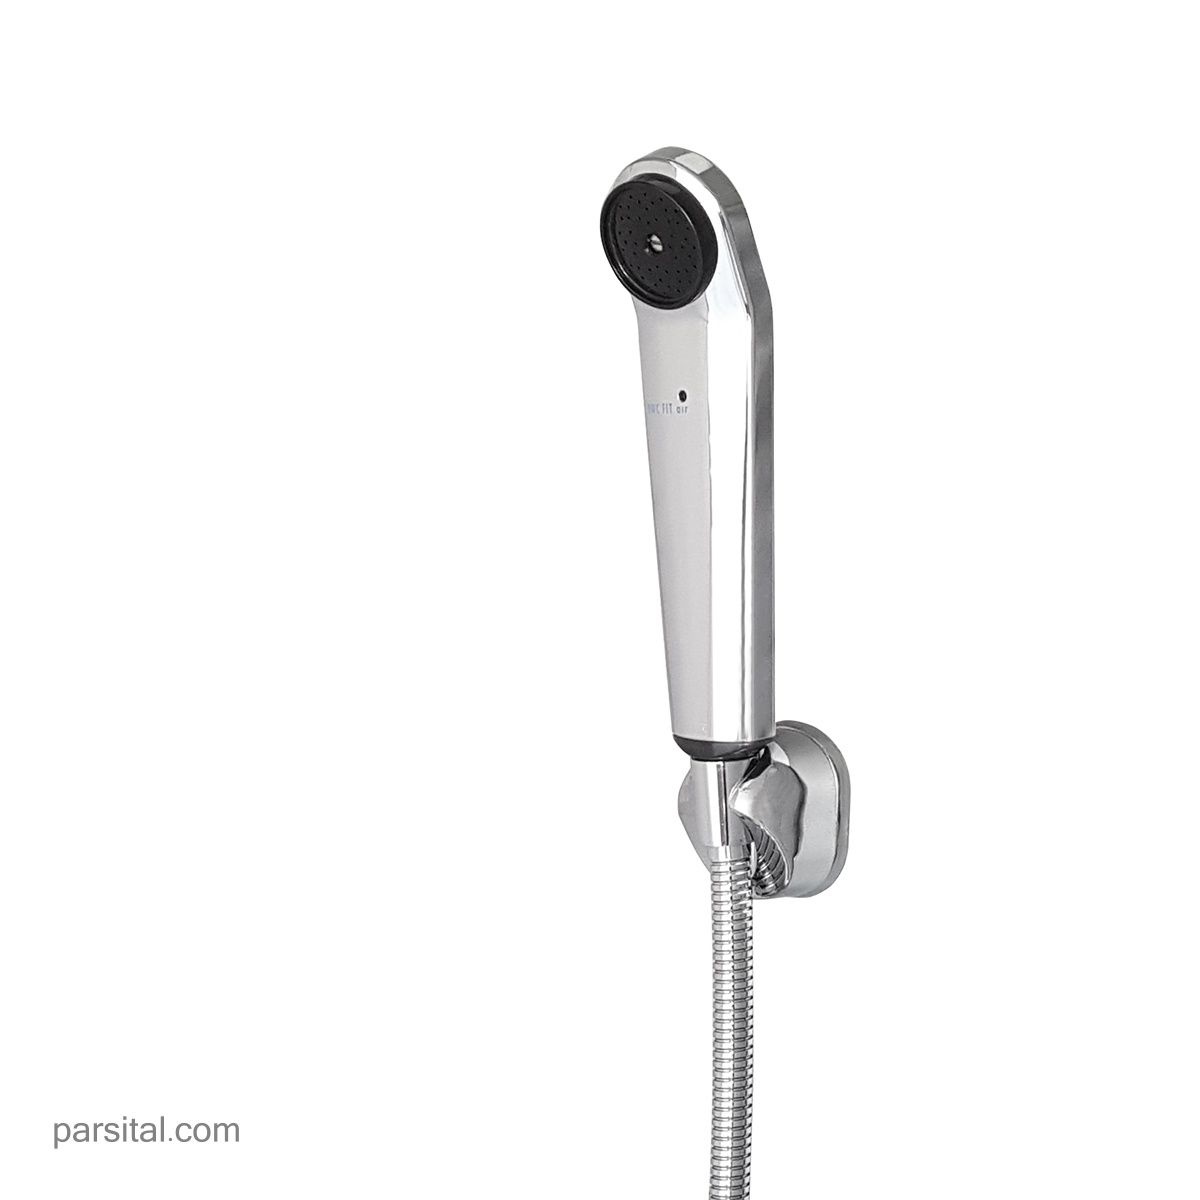 لوازم (متعلقات) حمام توکار کی دبلیو سی مدل زو تیپ 4 با سردوش استیل 25cm و گوشی فیت ایر کروم